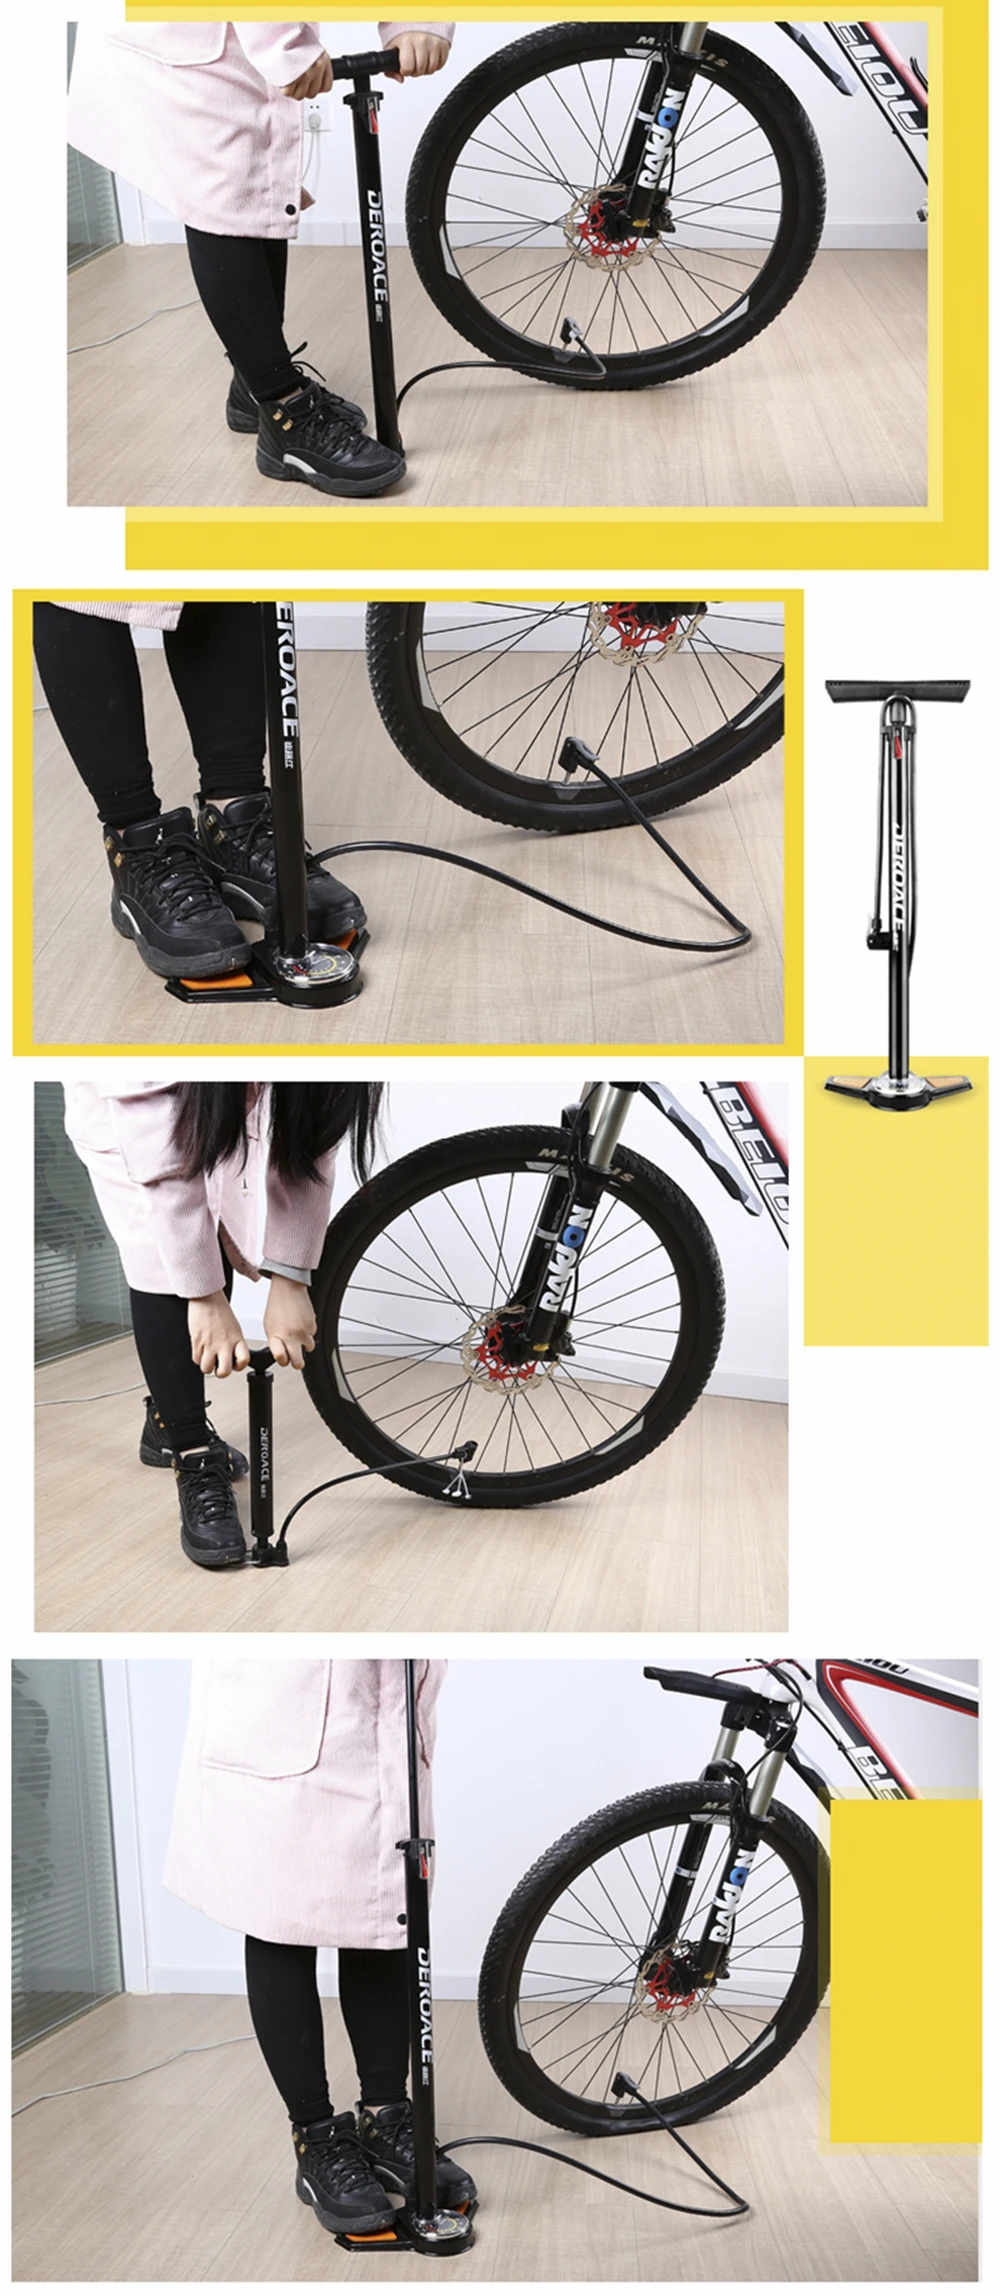 MTB велосипедный воздушный насос высокого давления, мини-насос велосипедный ручной насос с манометром для шин велосипедов/автомобилей/мячей, Аксессуары для велосипеда